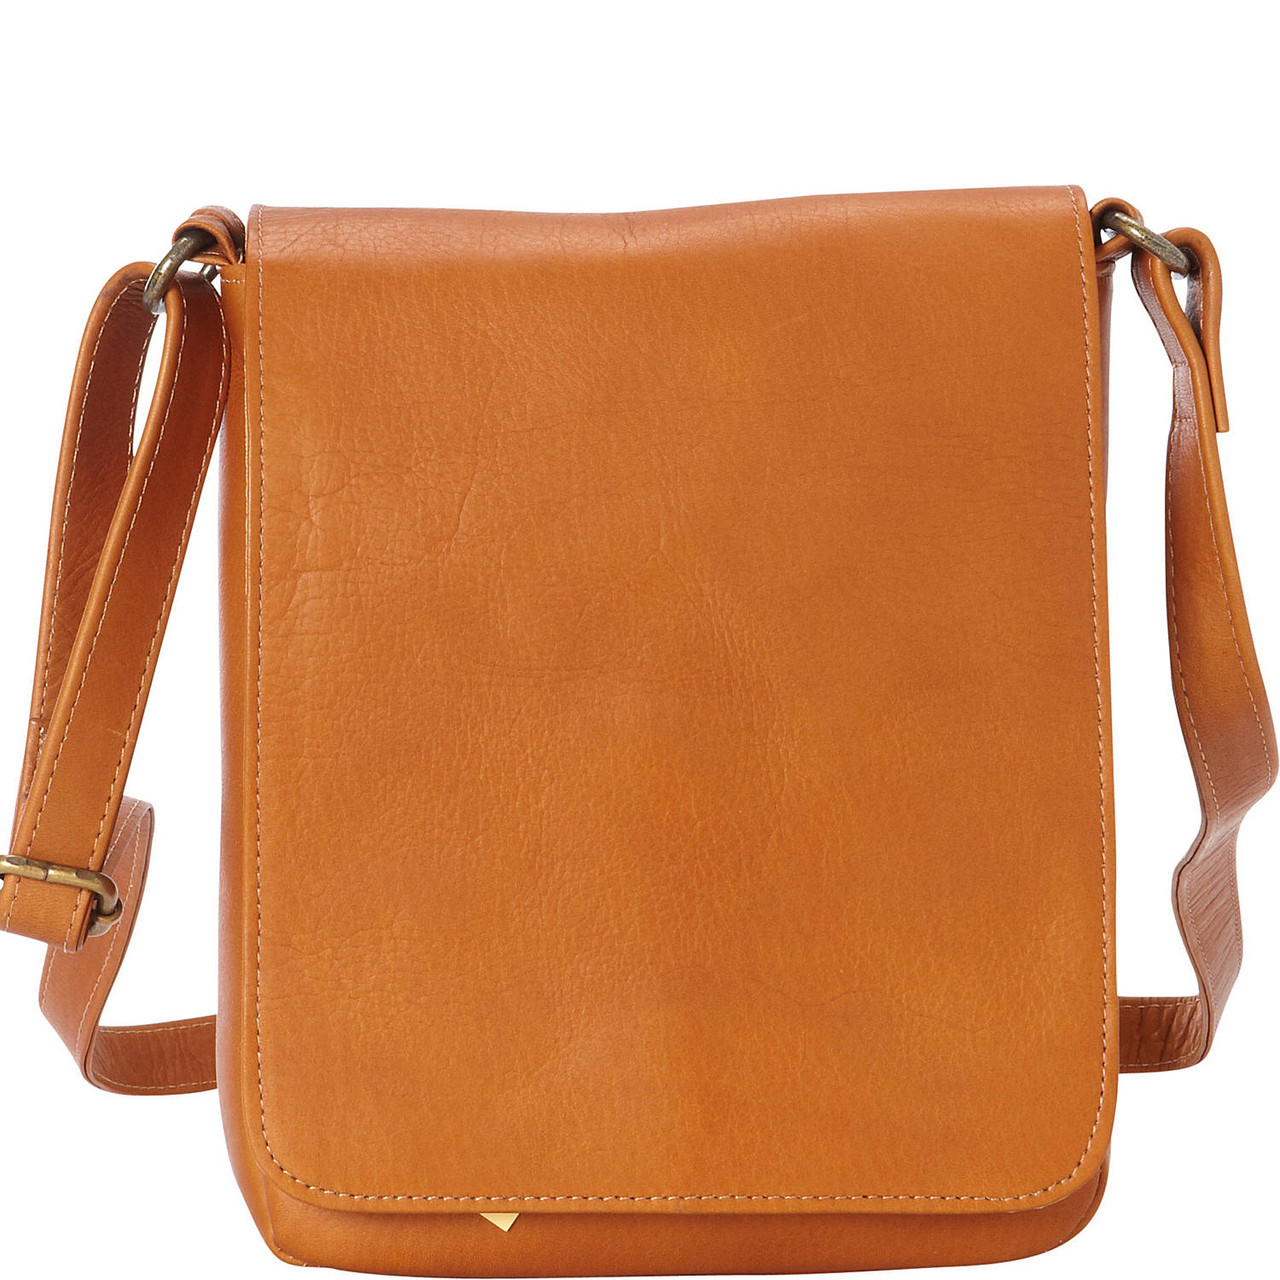 Leather Flap-Over Shoulder Bag - Le Donne Leather